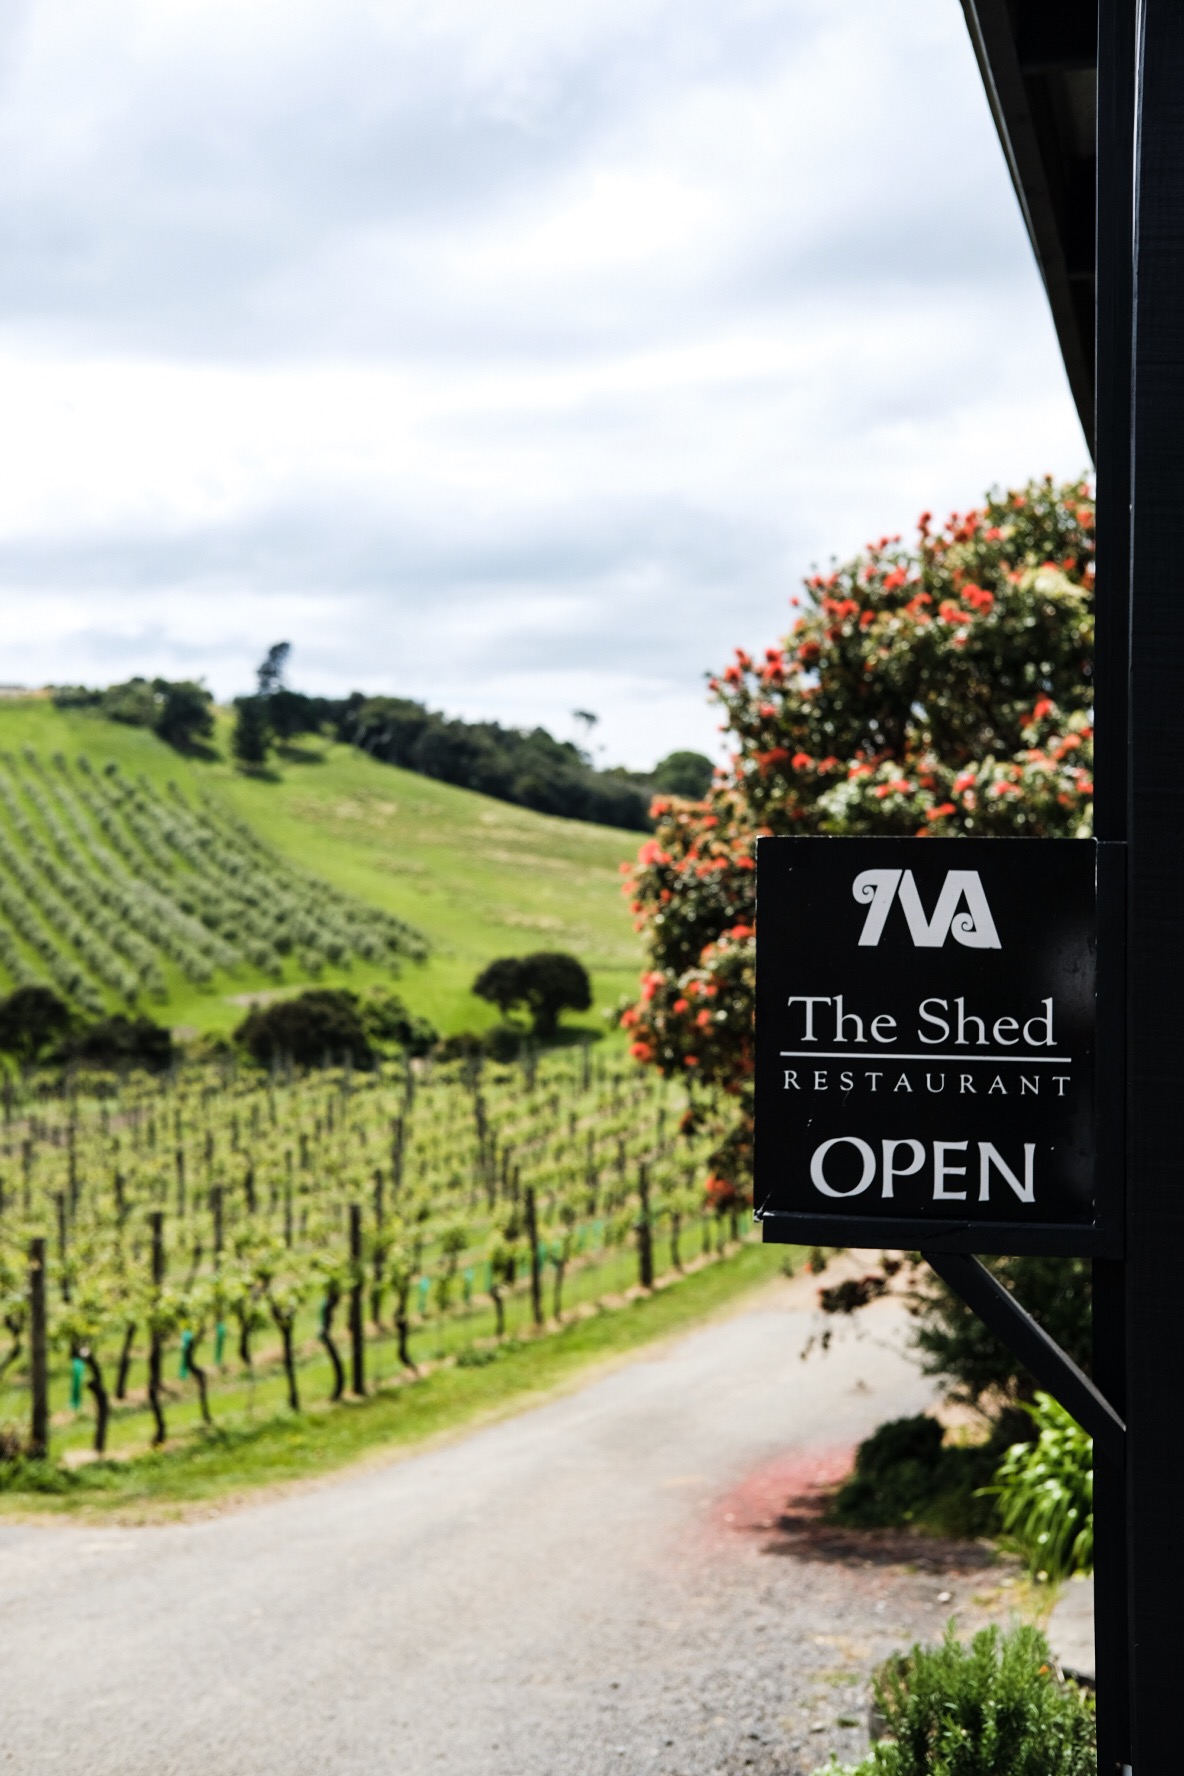 The Shed restaurant at Te Motu vineyard